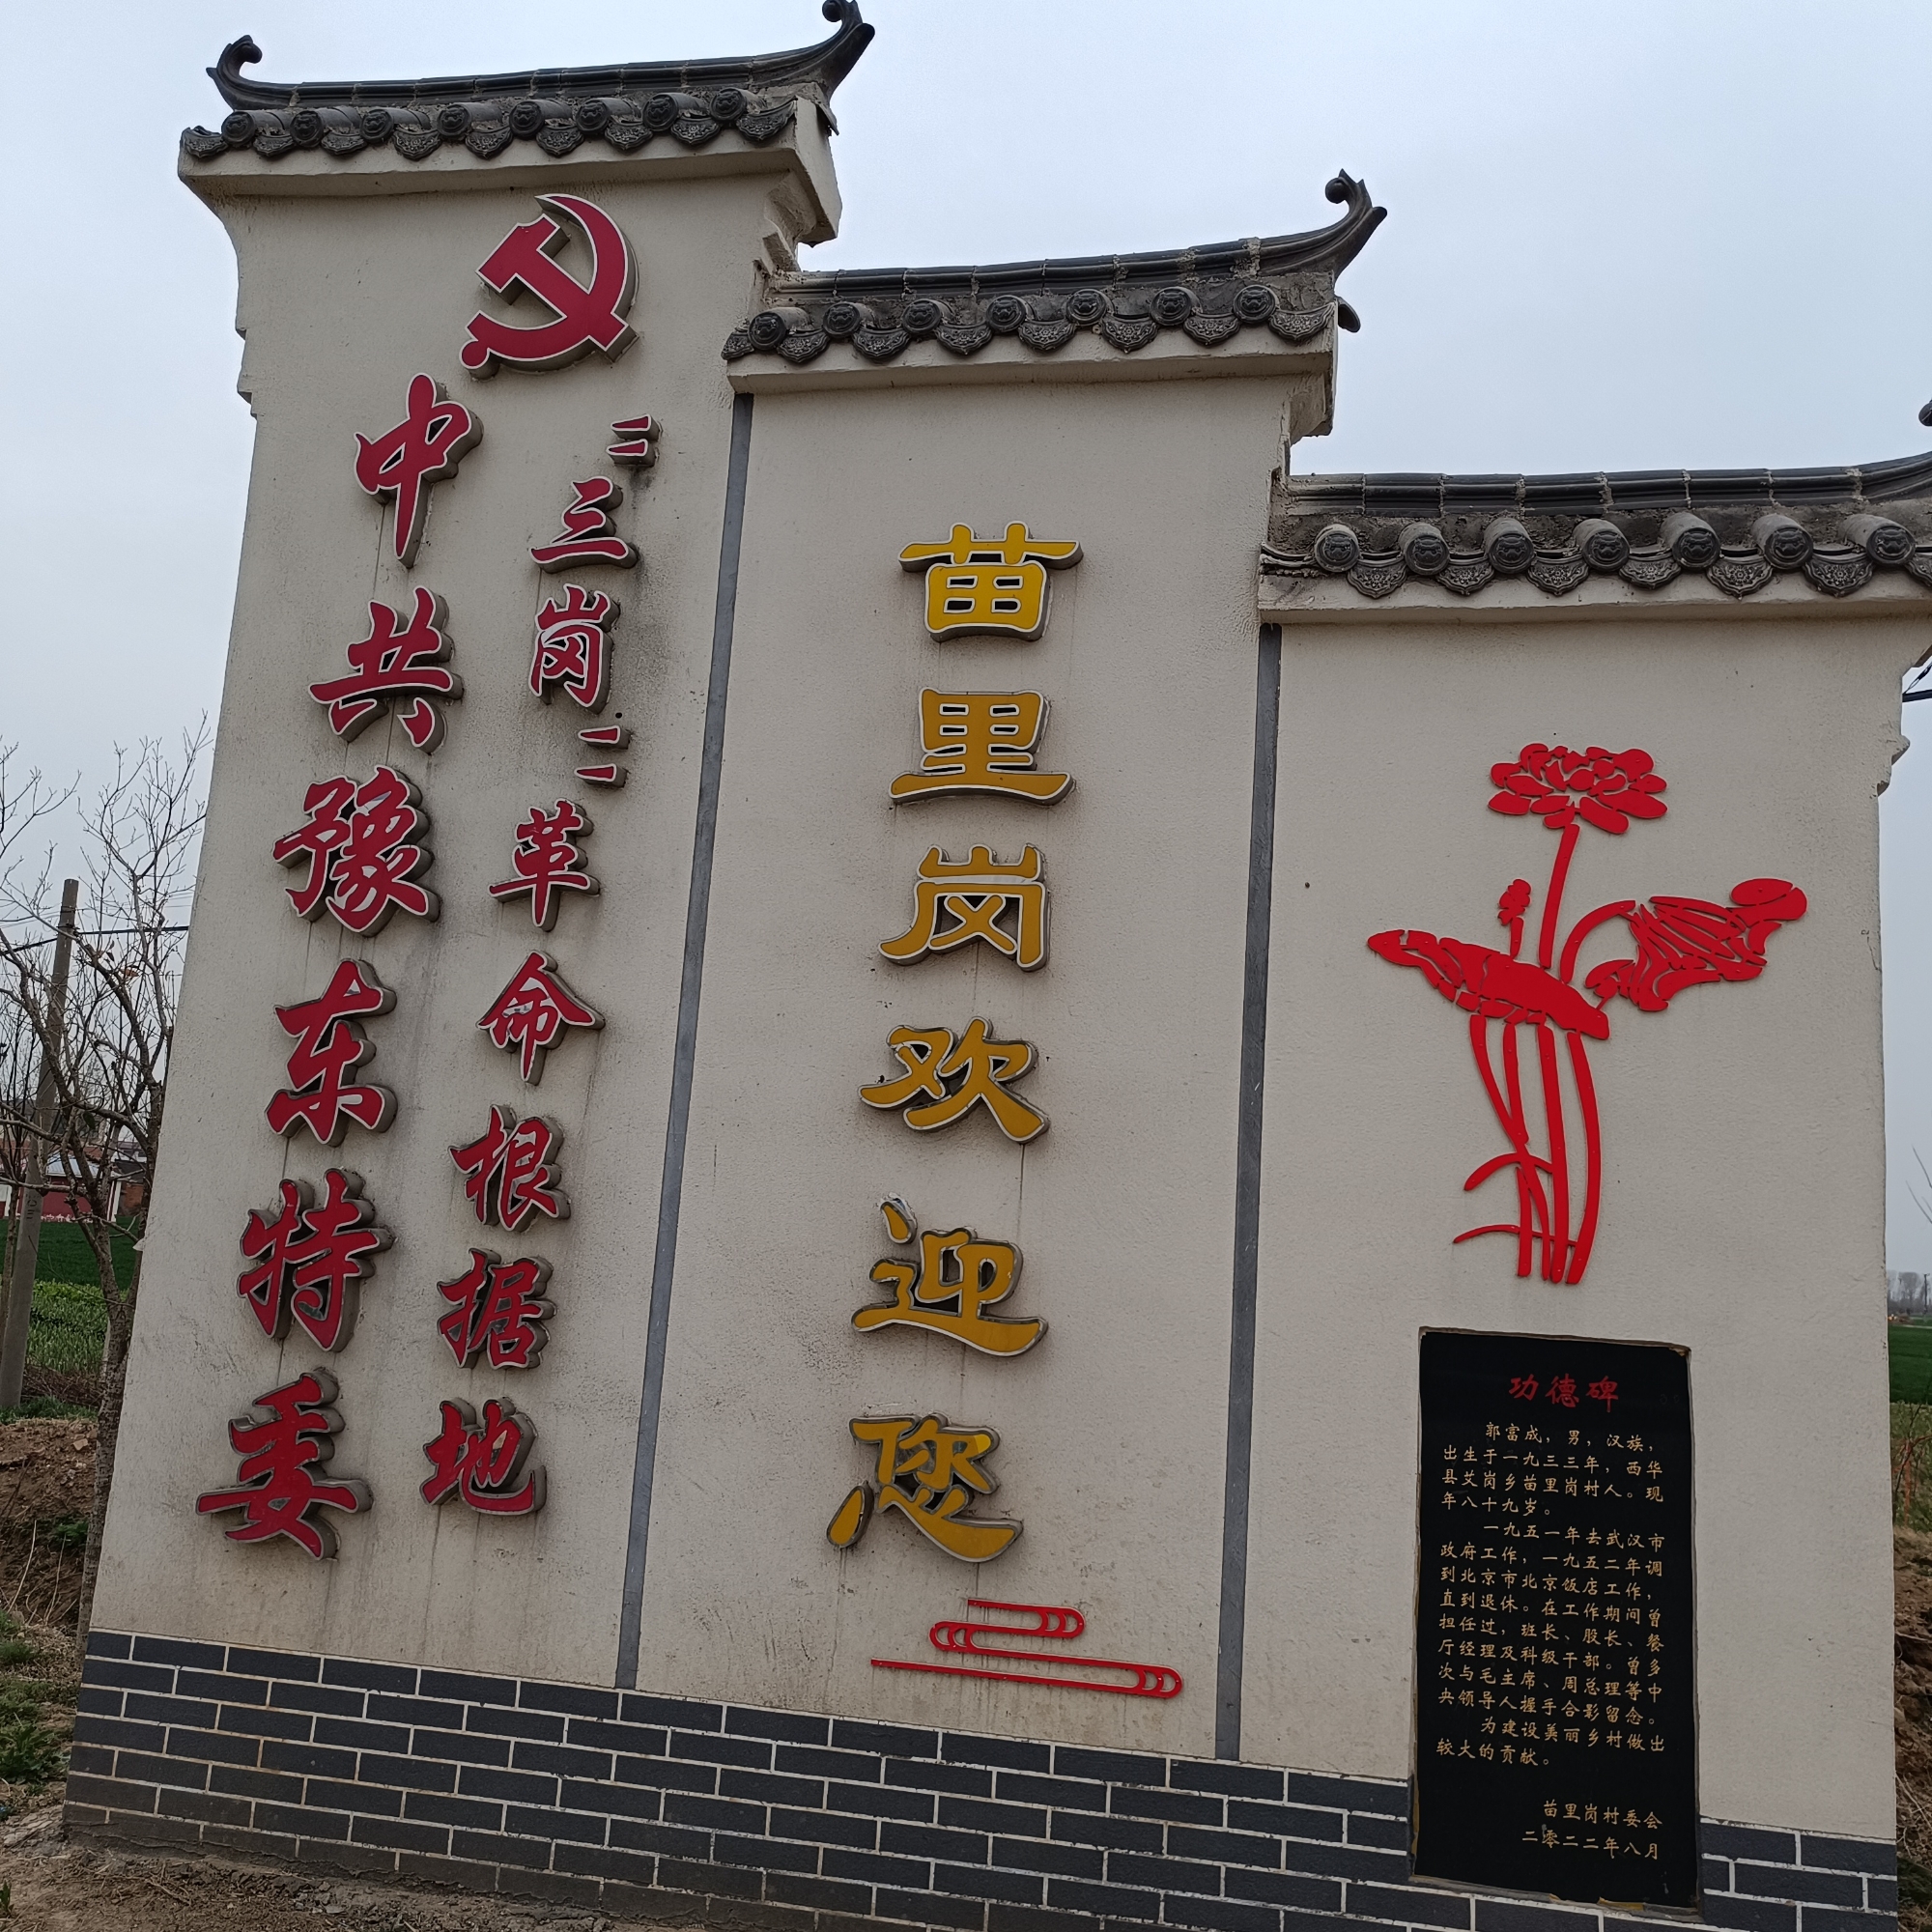 中国豫东特委，三岗革命老区位于周口市商水县艾岗乡，位于一小学院内，是河南最早，较有影响的一块平原抗日